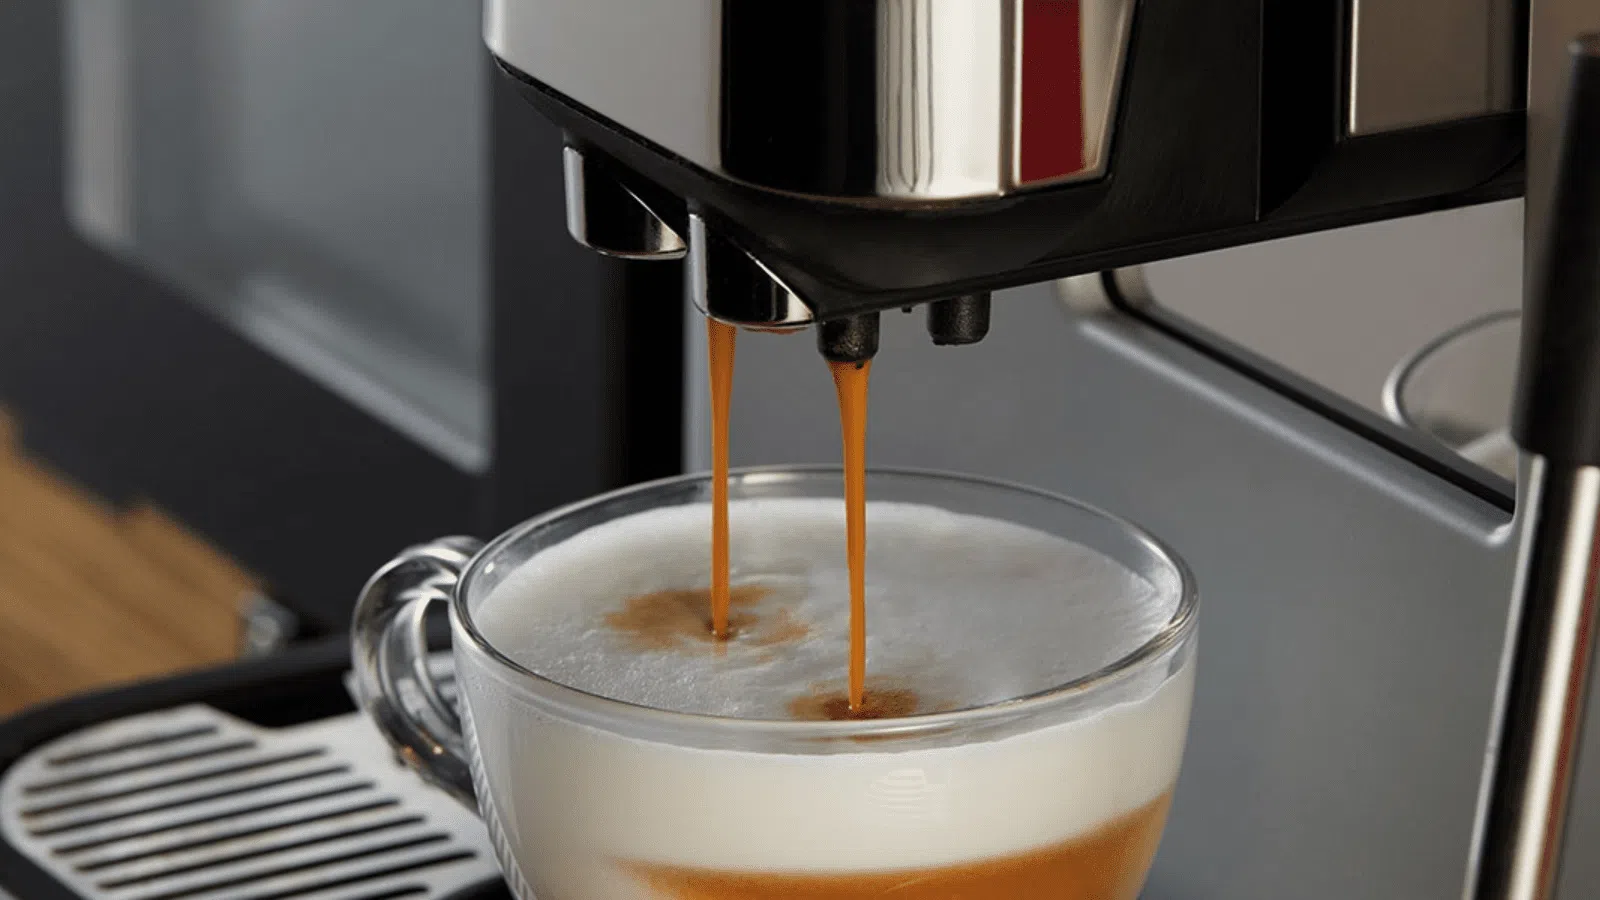 Entenda sobre máquina de café e escolha o modelo ideal para você